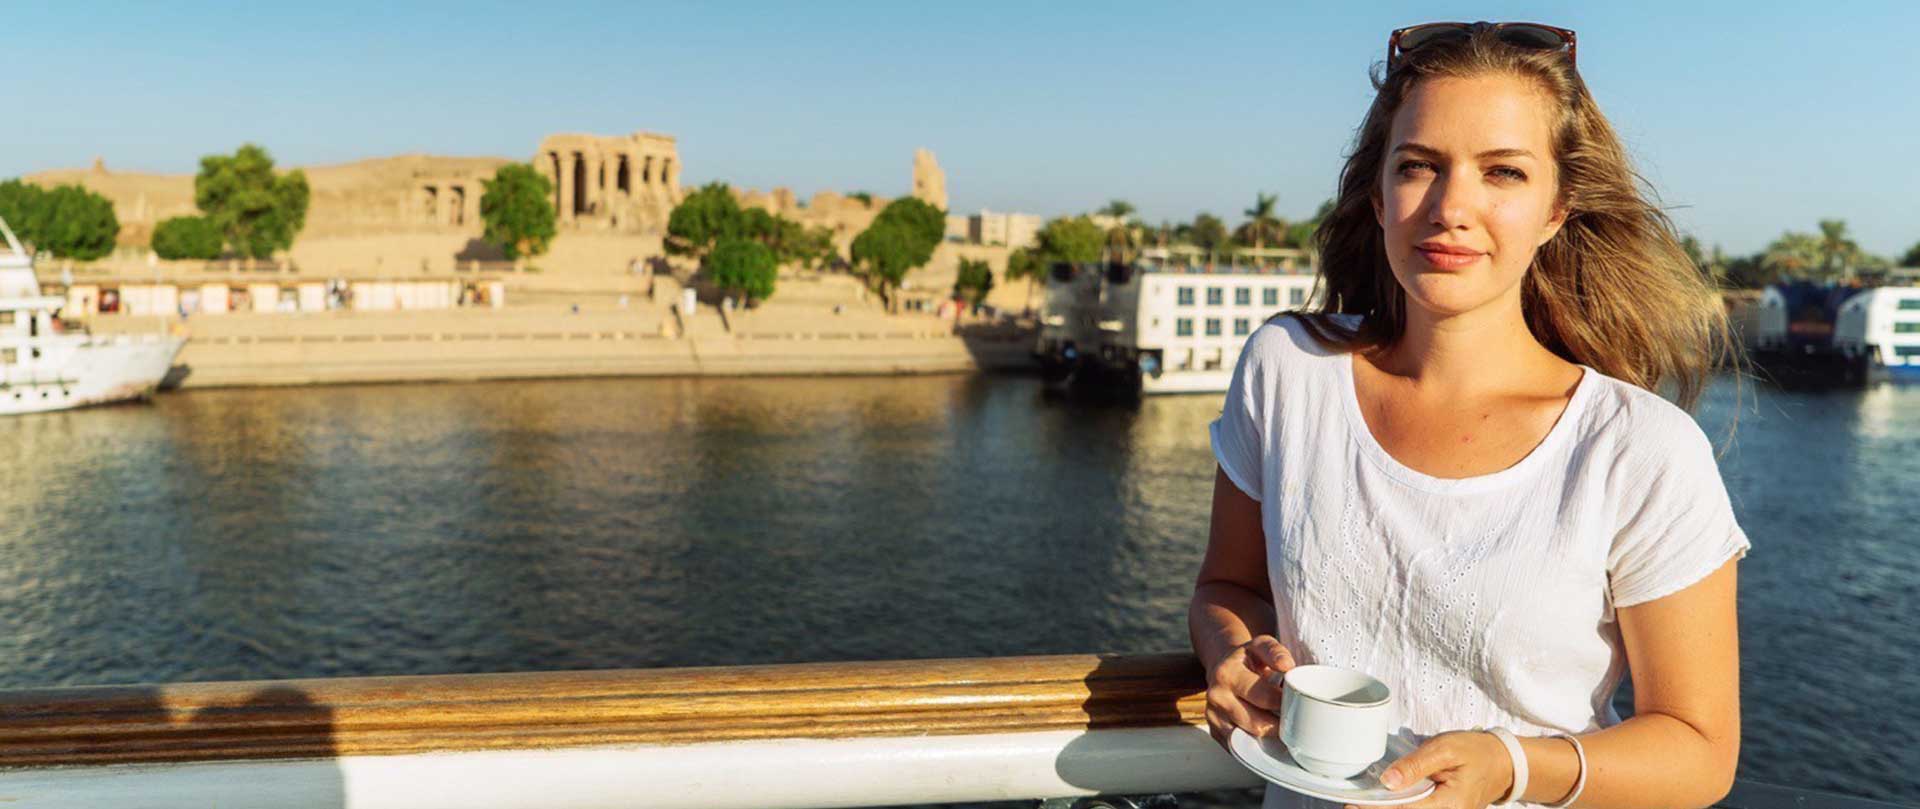 Nile Cruise Holidays